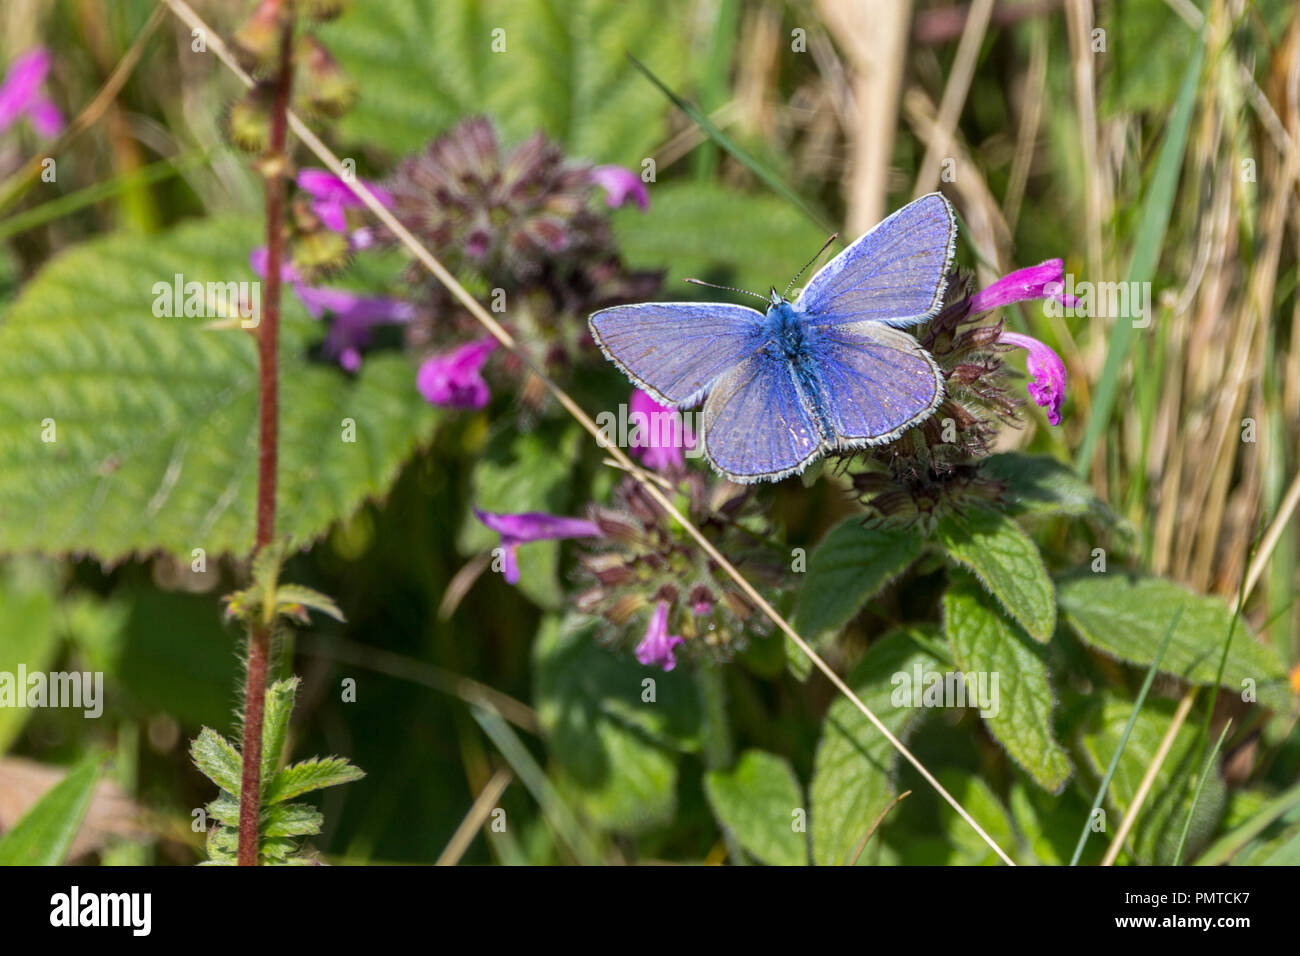 Gemeinsame blauer Schmetterling (Polyommatus icarus) auf lila blühenden Vegetation. Küstenregion semi Wald und Wiese Lebensraum. Offenen Flügeln von oben betrachtet. Stockfoto